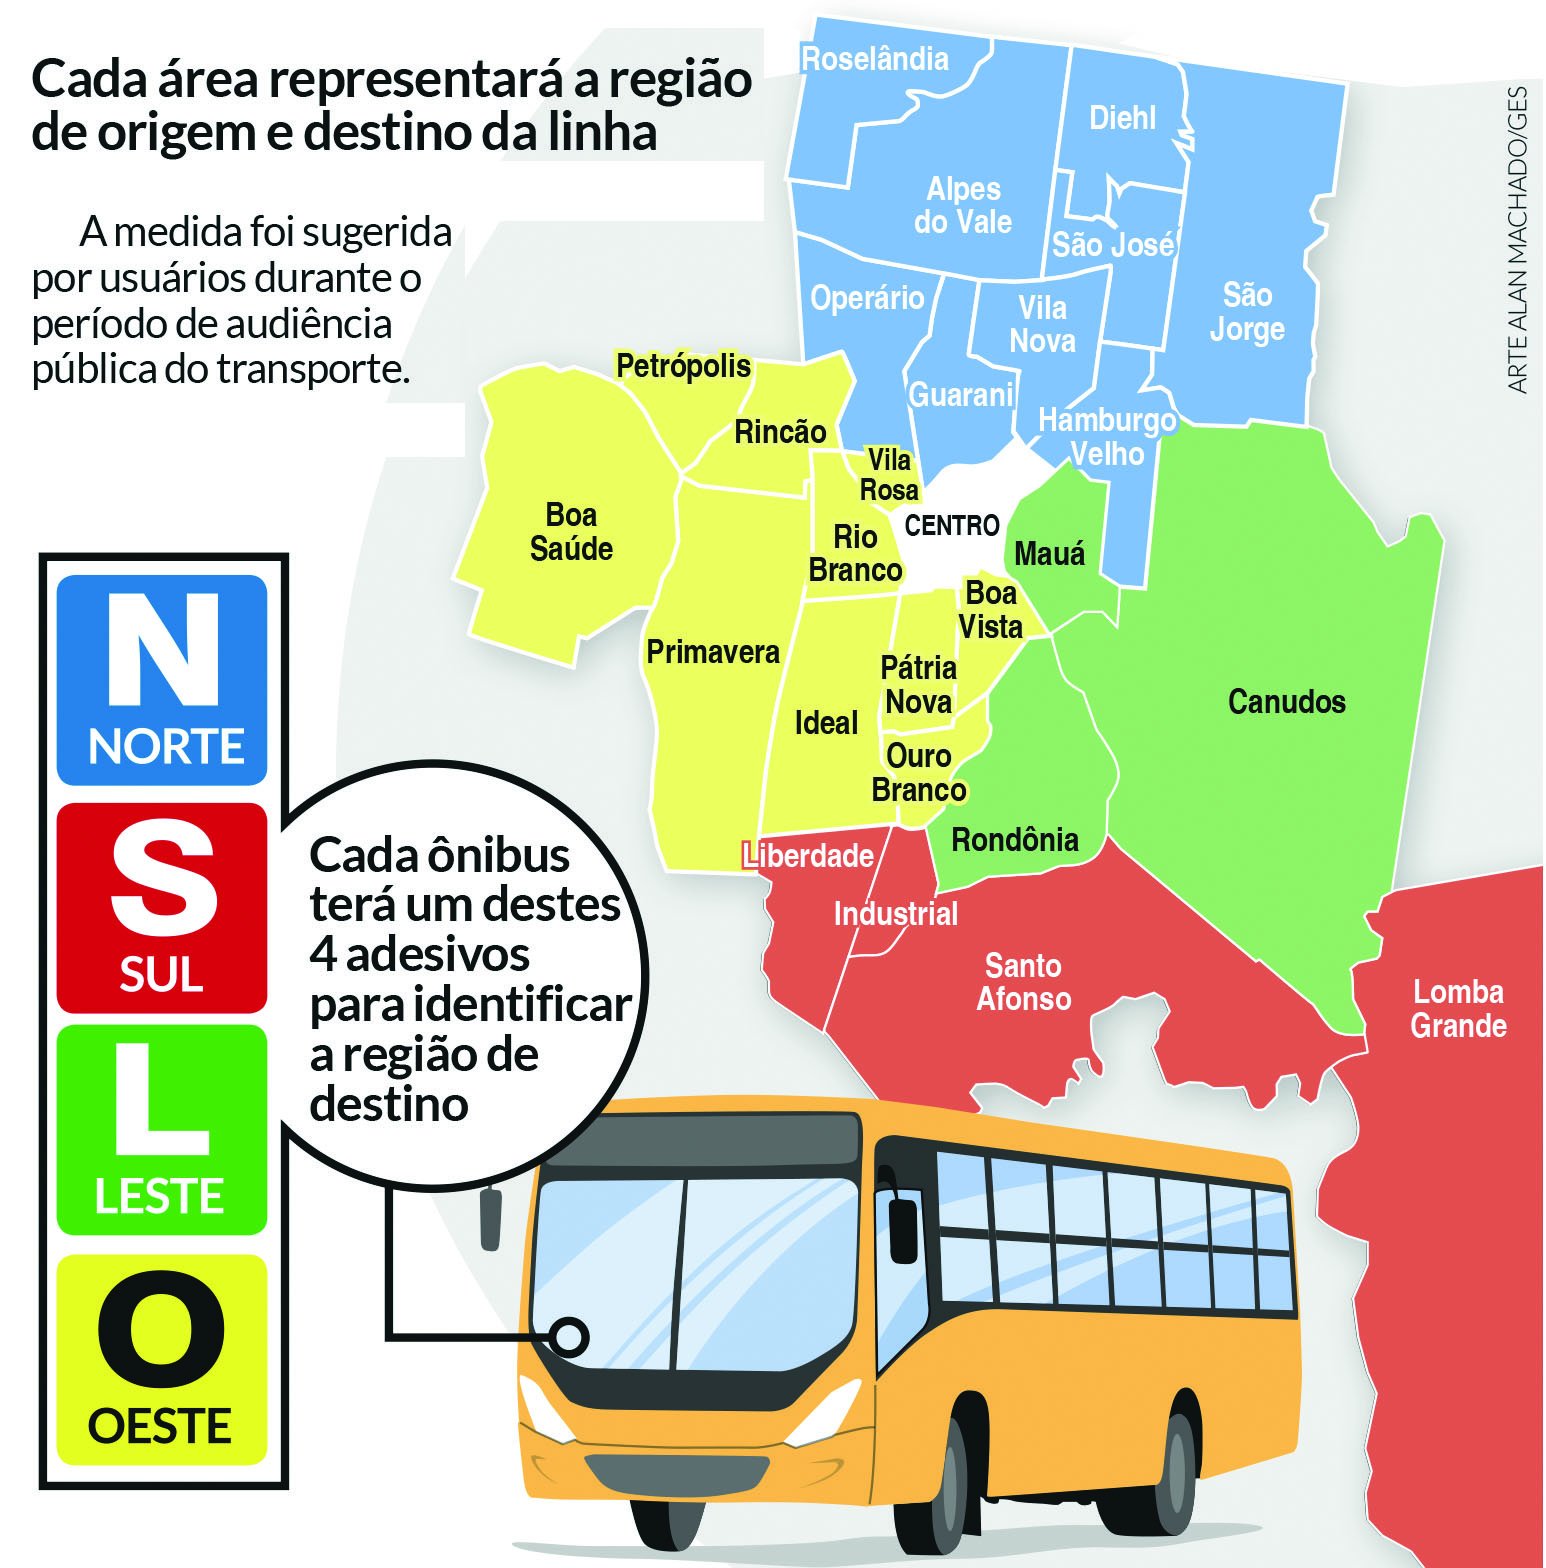 NOVO HAMBURGO: Como vai funcionar o sistema de cores para identificar as linhas de ônibus